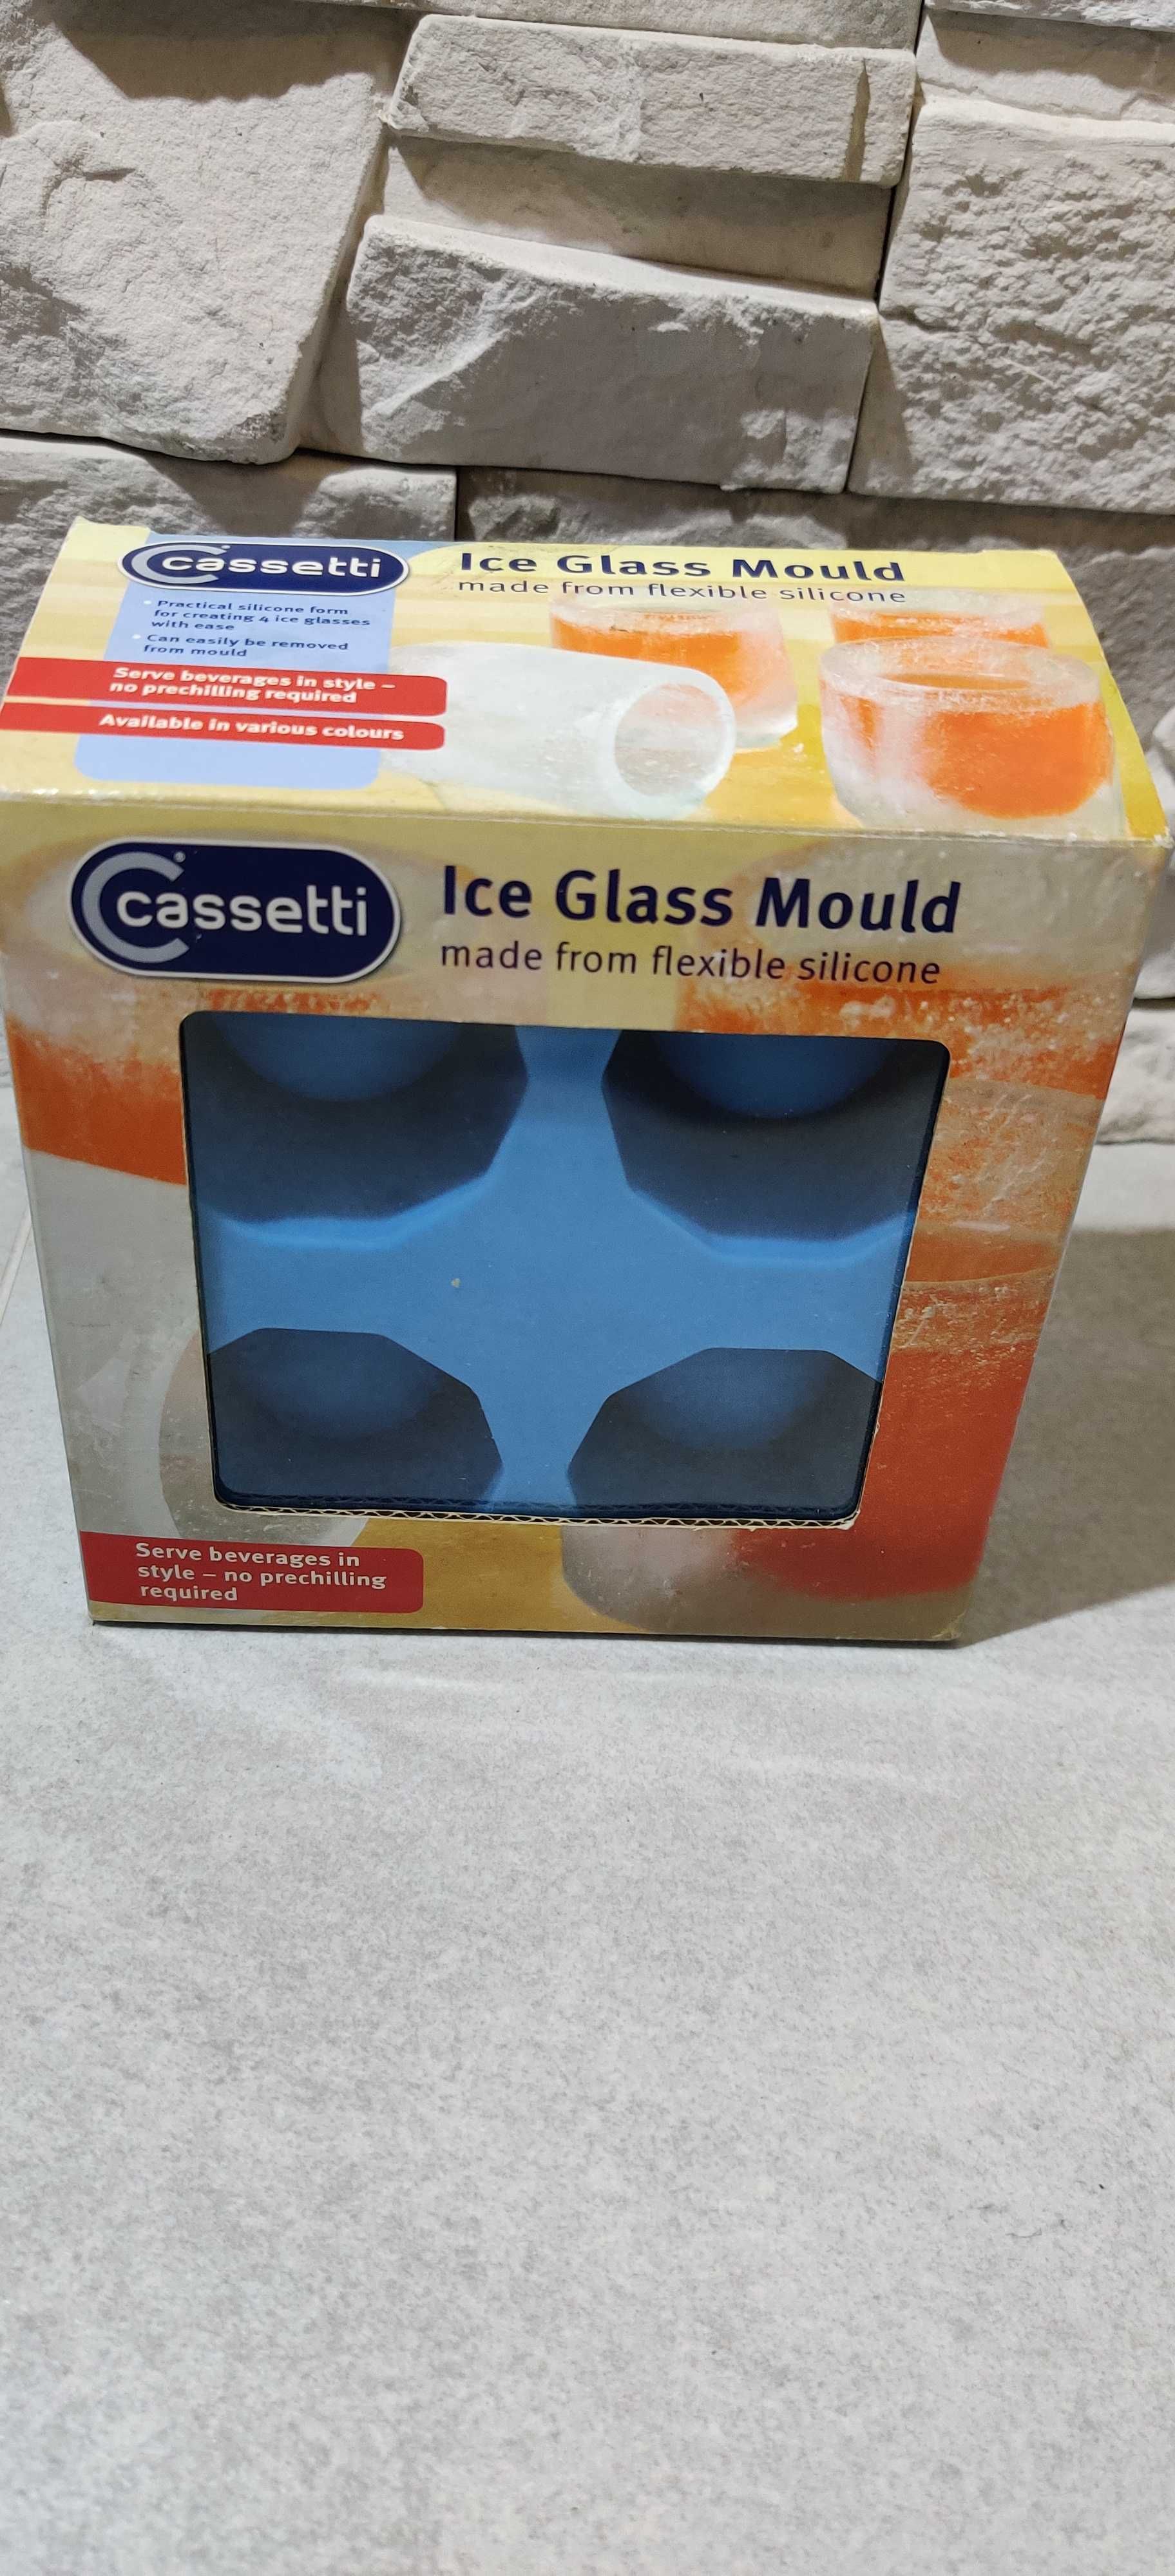 Cassetti forma foremka do lodu kieliszki lodowe silikonowa